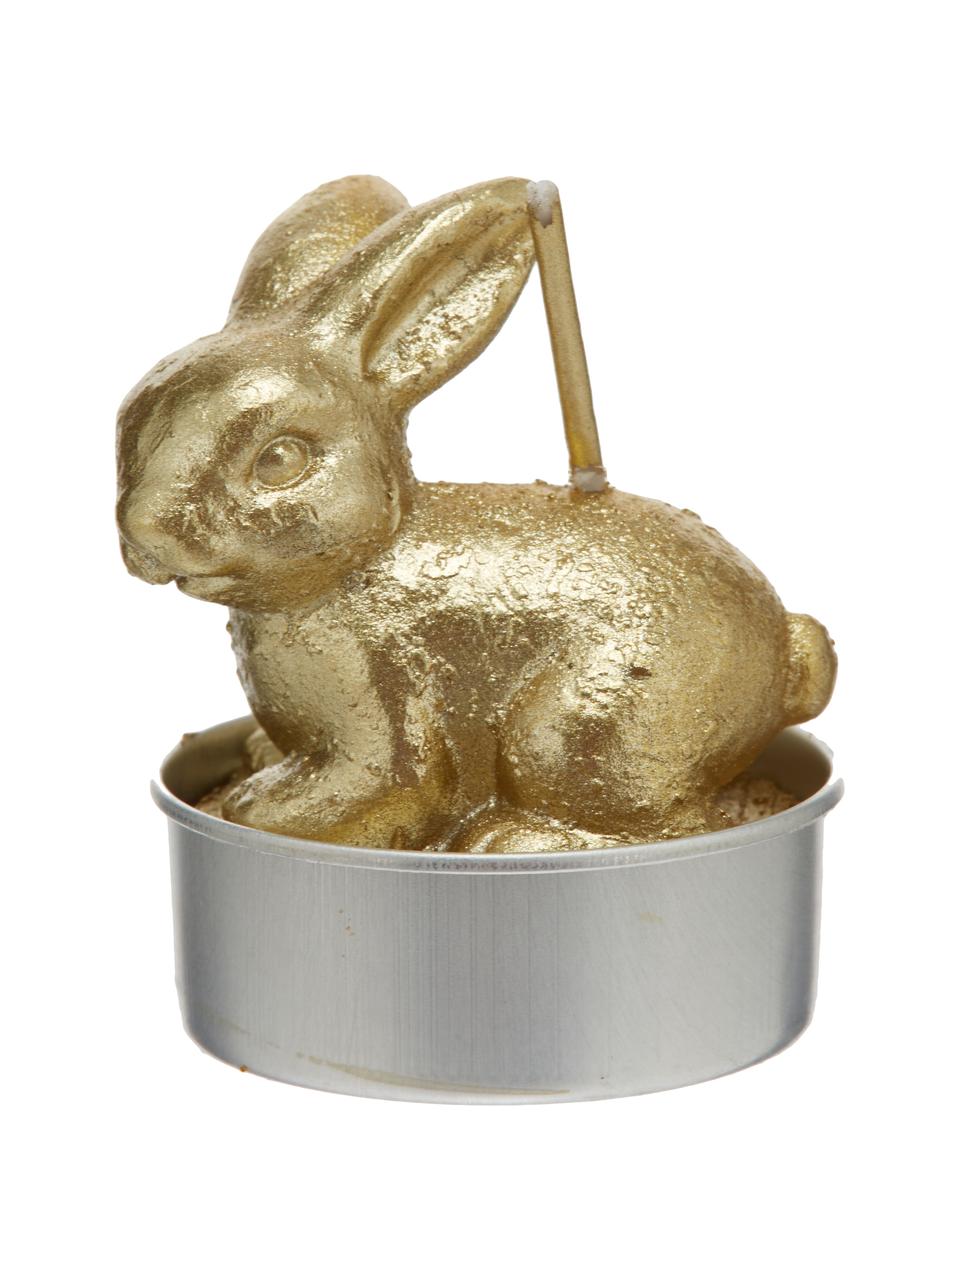 Teelichter-Set Rabbits, 6-tlg., Wachs, Goldfarben, Ø 6 x H 10 cm